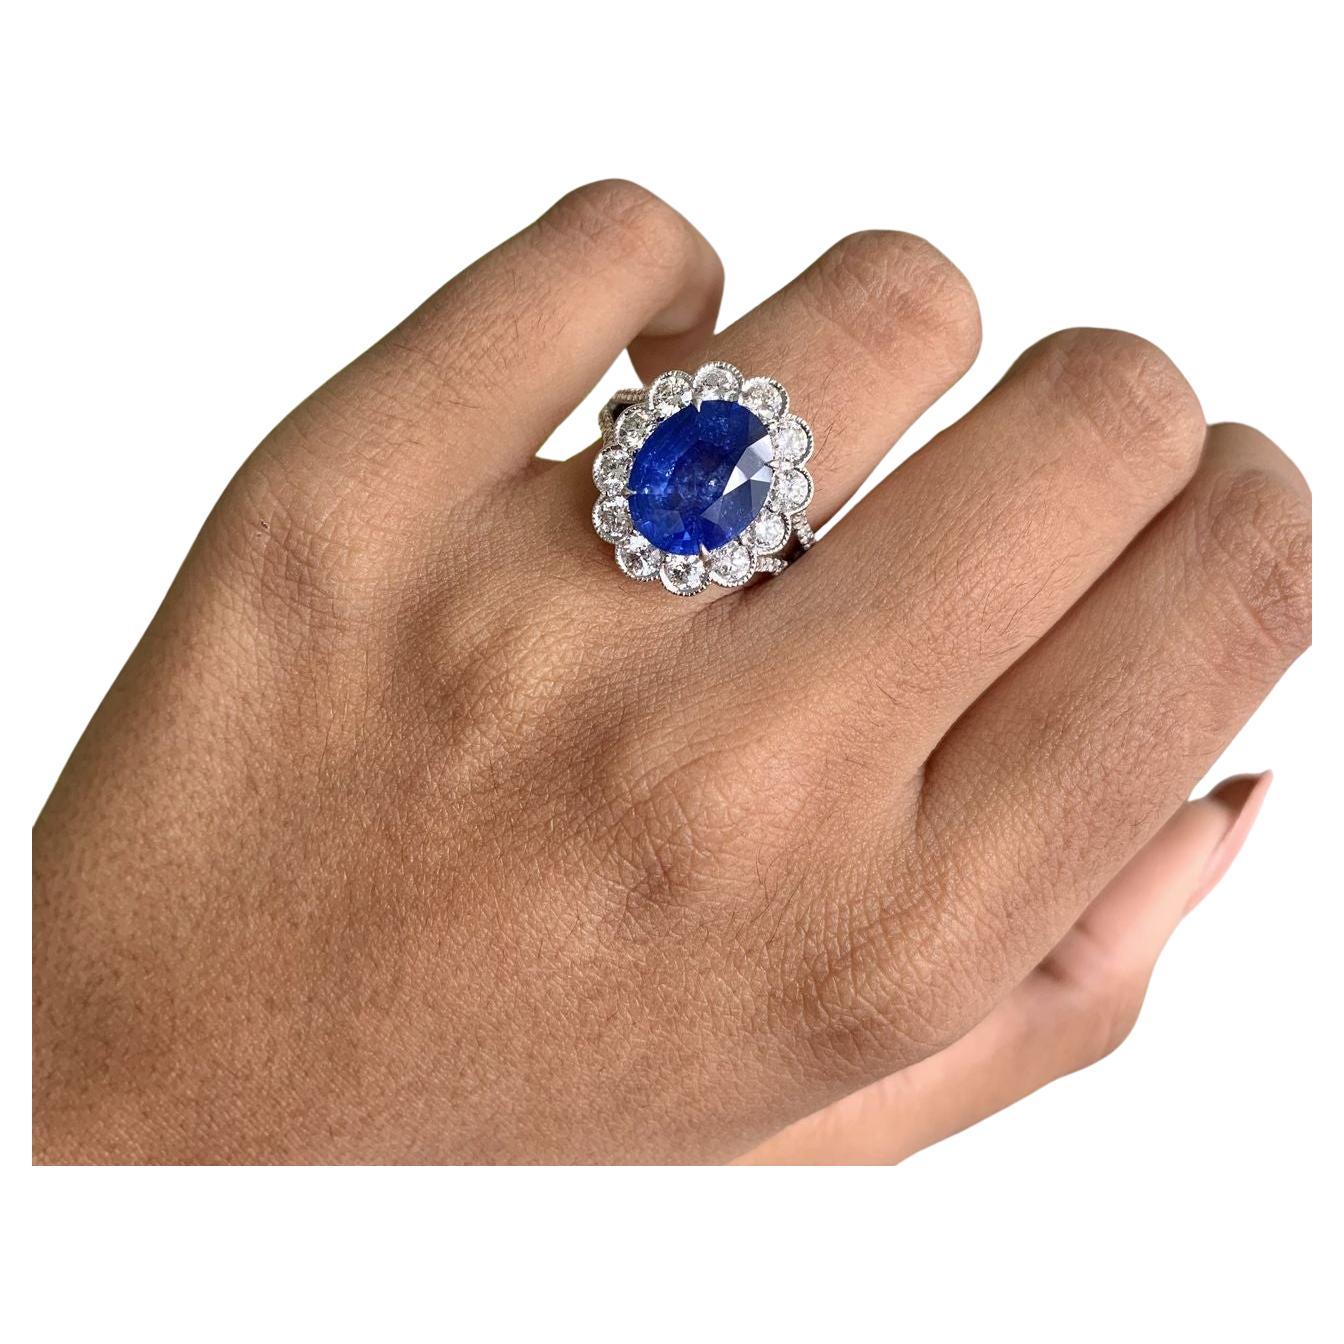 Bague saphir bleu et diamant, un symbole de beauté intemporelle et de savoir-faire impeccable.

La bague est présentée en gros plan, mettant en valeur l'éclat du saphir bleu de 4,32 carats, de forme ovale, qui brille d'une teinte bleu roi.

Au cœur